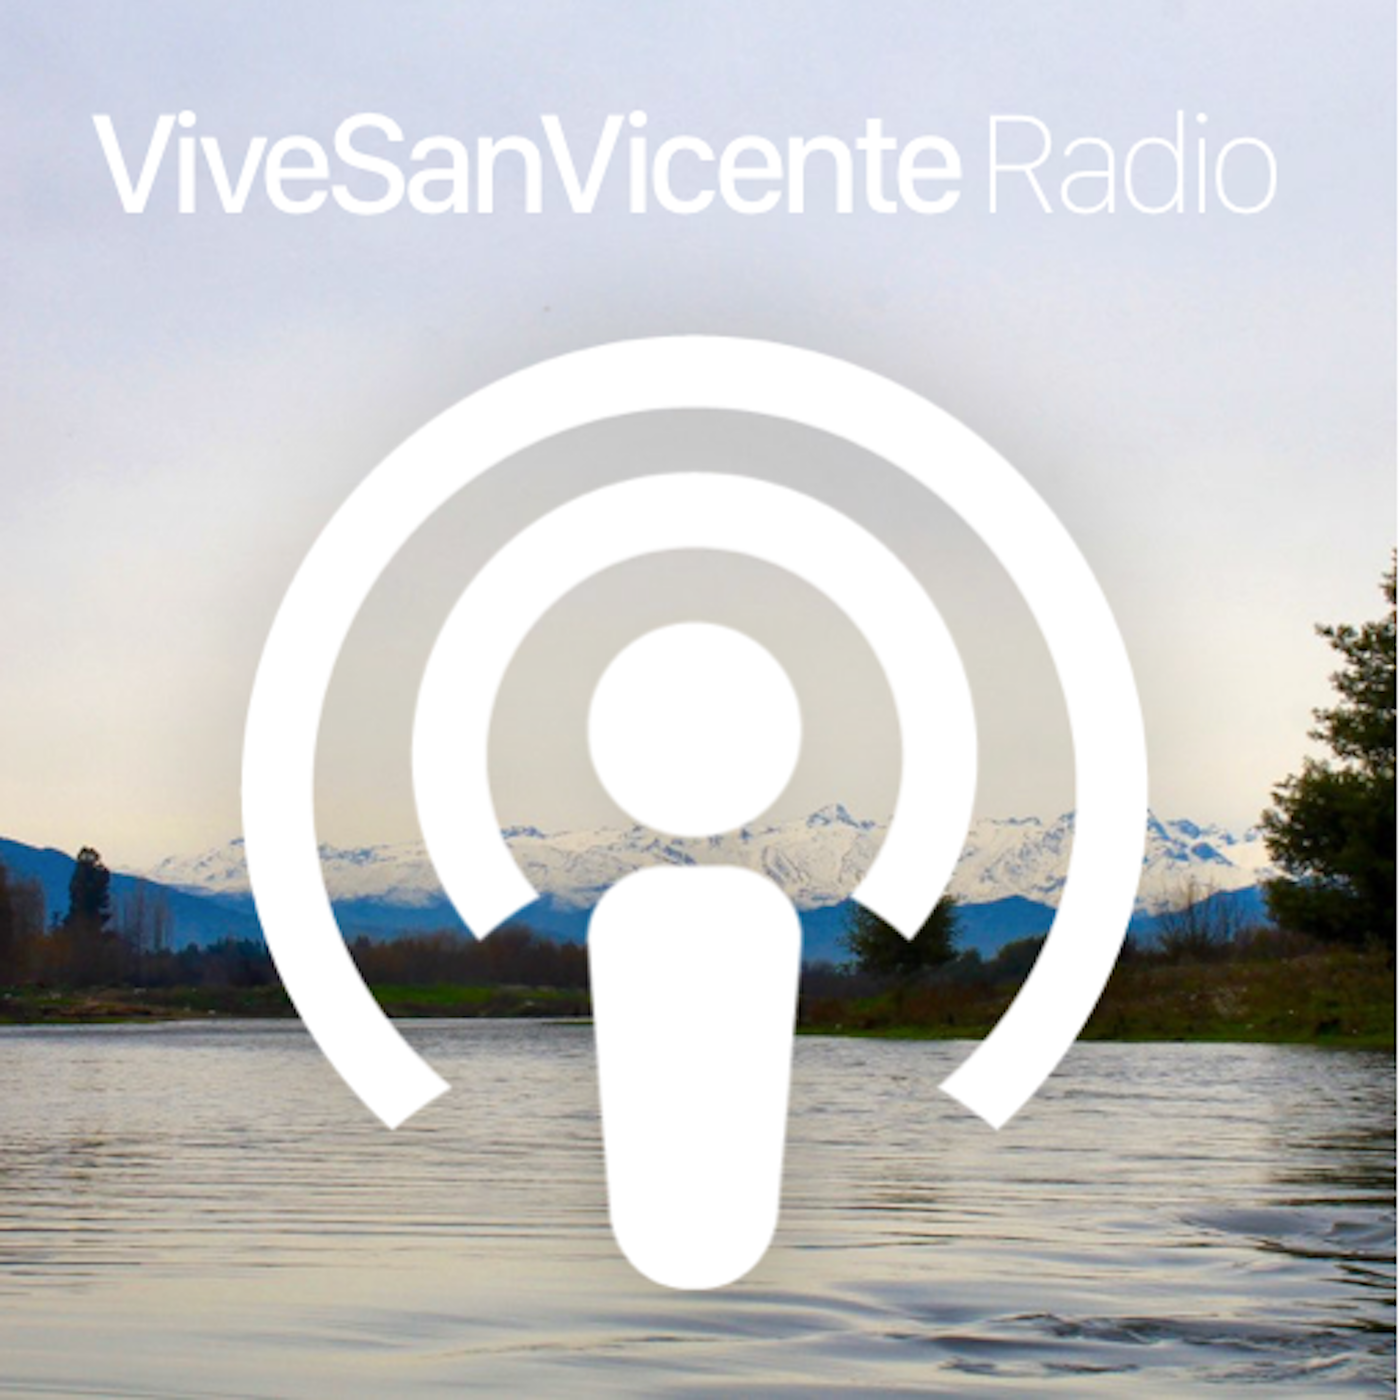 ViveSanVicente Radio